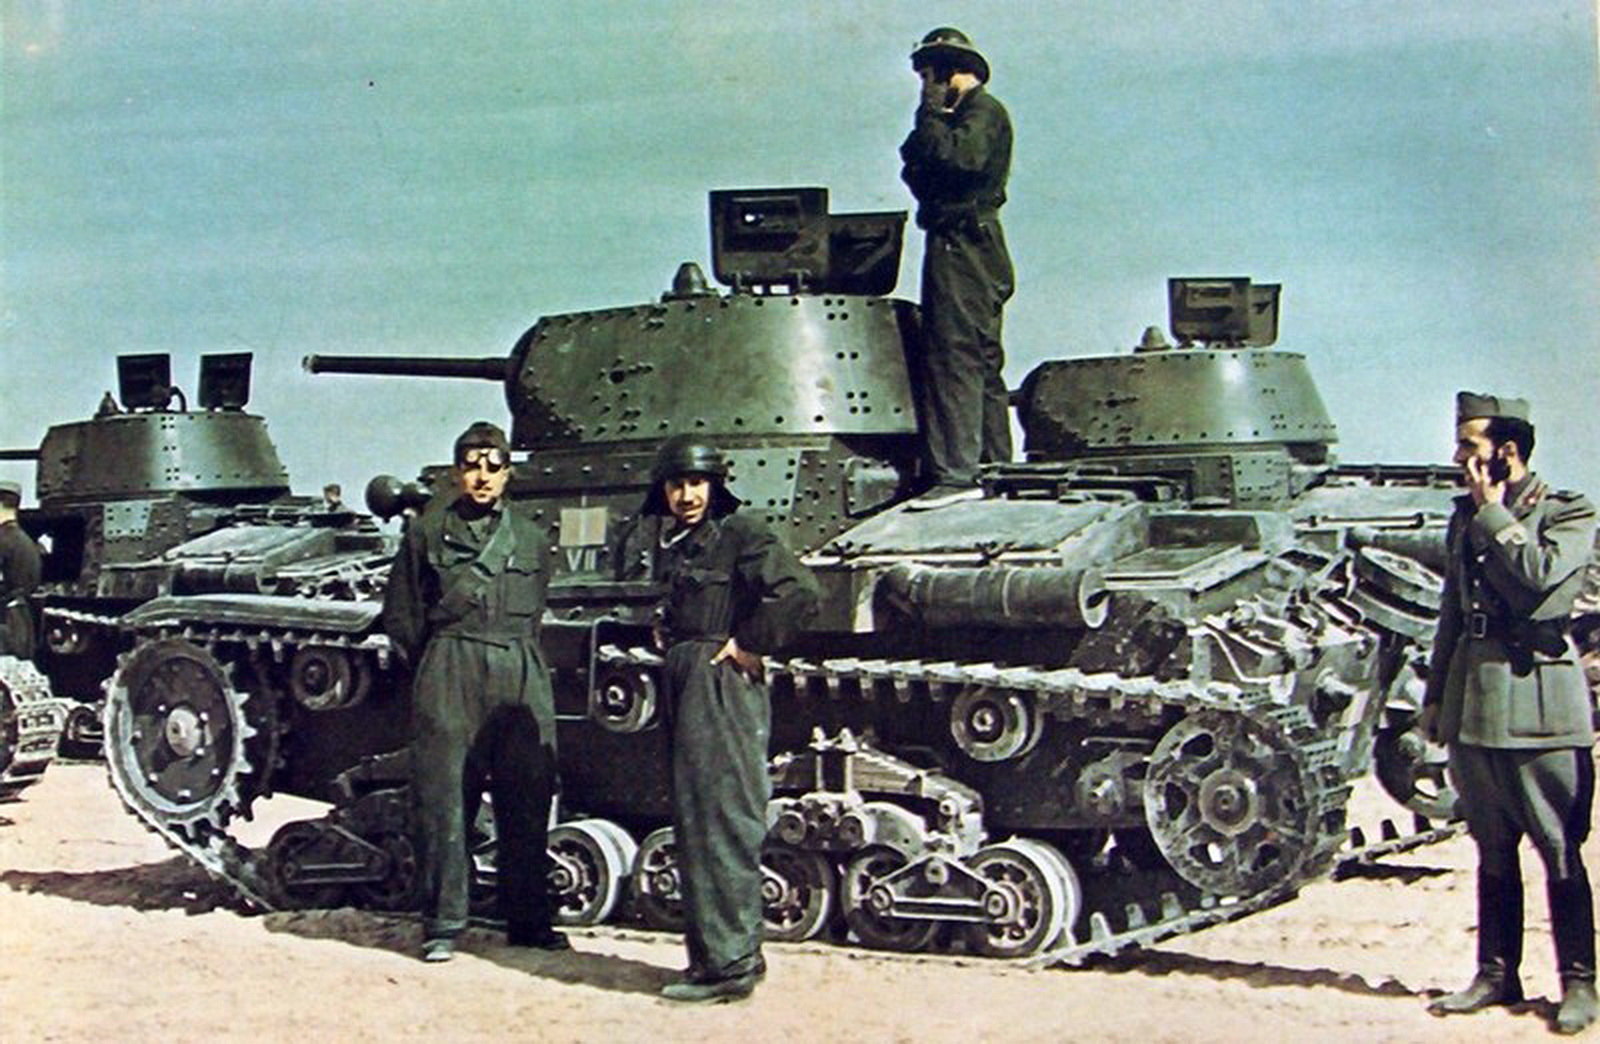 Фашистская техника. Танк carro armato m13/40. 132-Я танковая дивизия «Ариете». Немецкие танкисты 1941. M13/40 дивизия Ариете.